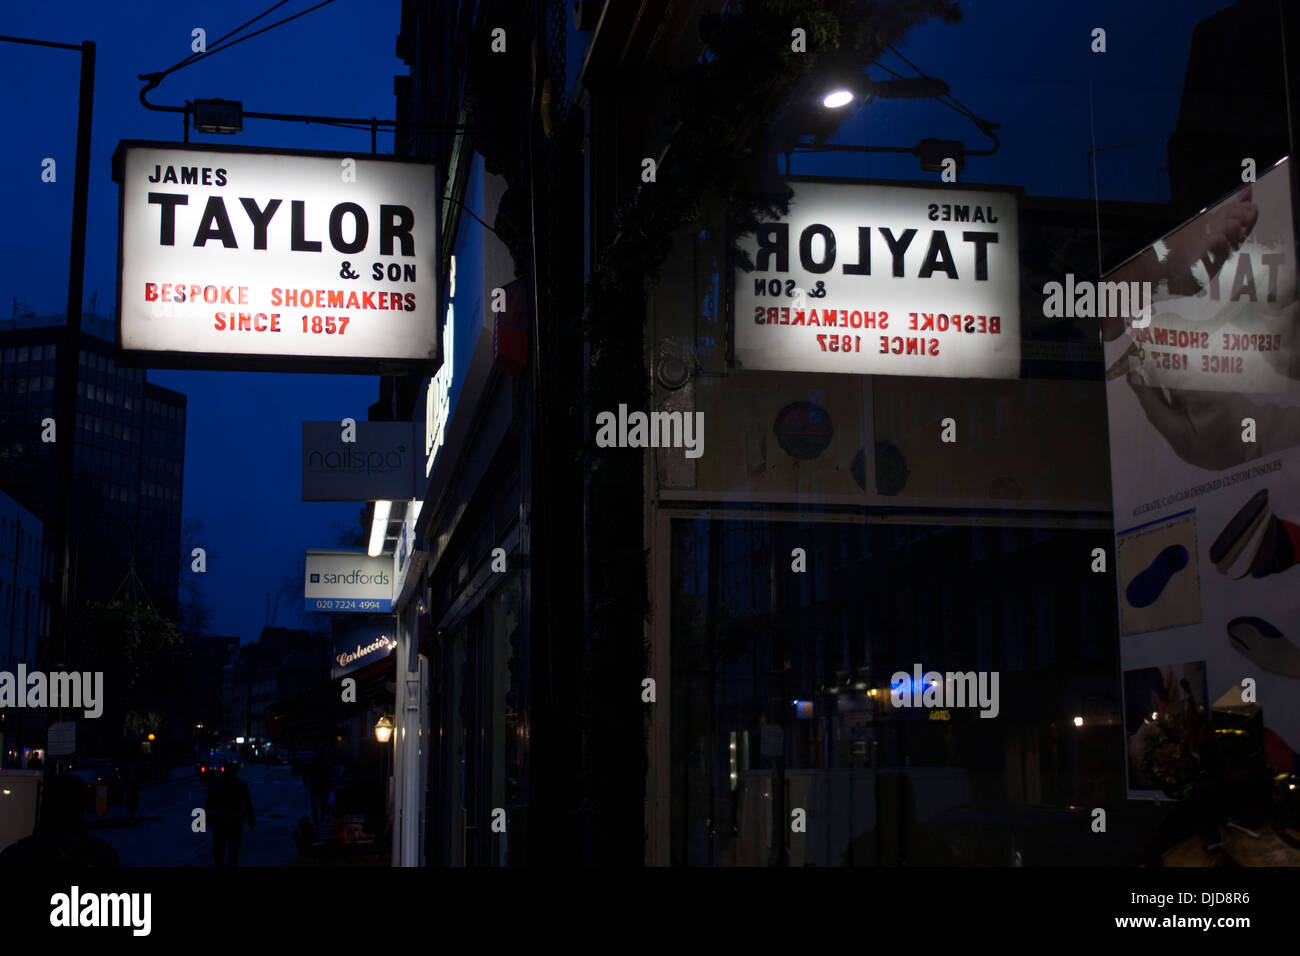 James Taylor & Figlio Bespoke calzolai dal 1857 insegna esterna calzatura / calzolaio shop al crepuscolo / notte Marylebone Londra Inghilterra REGNO UNITO Foto Stock